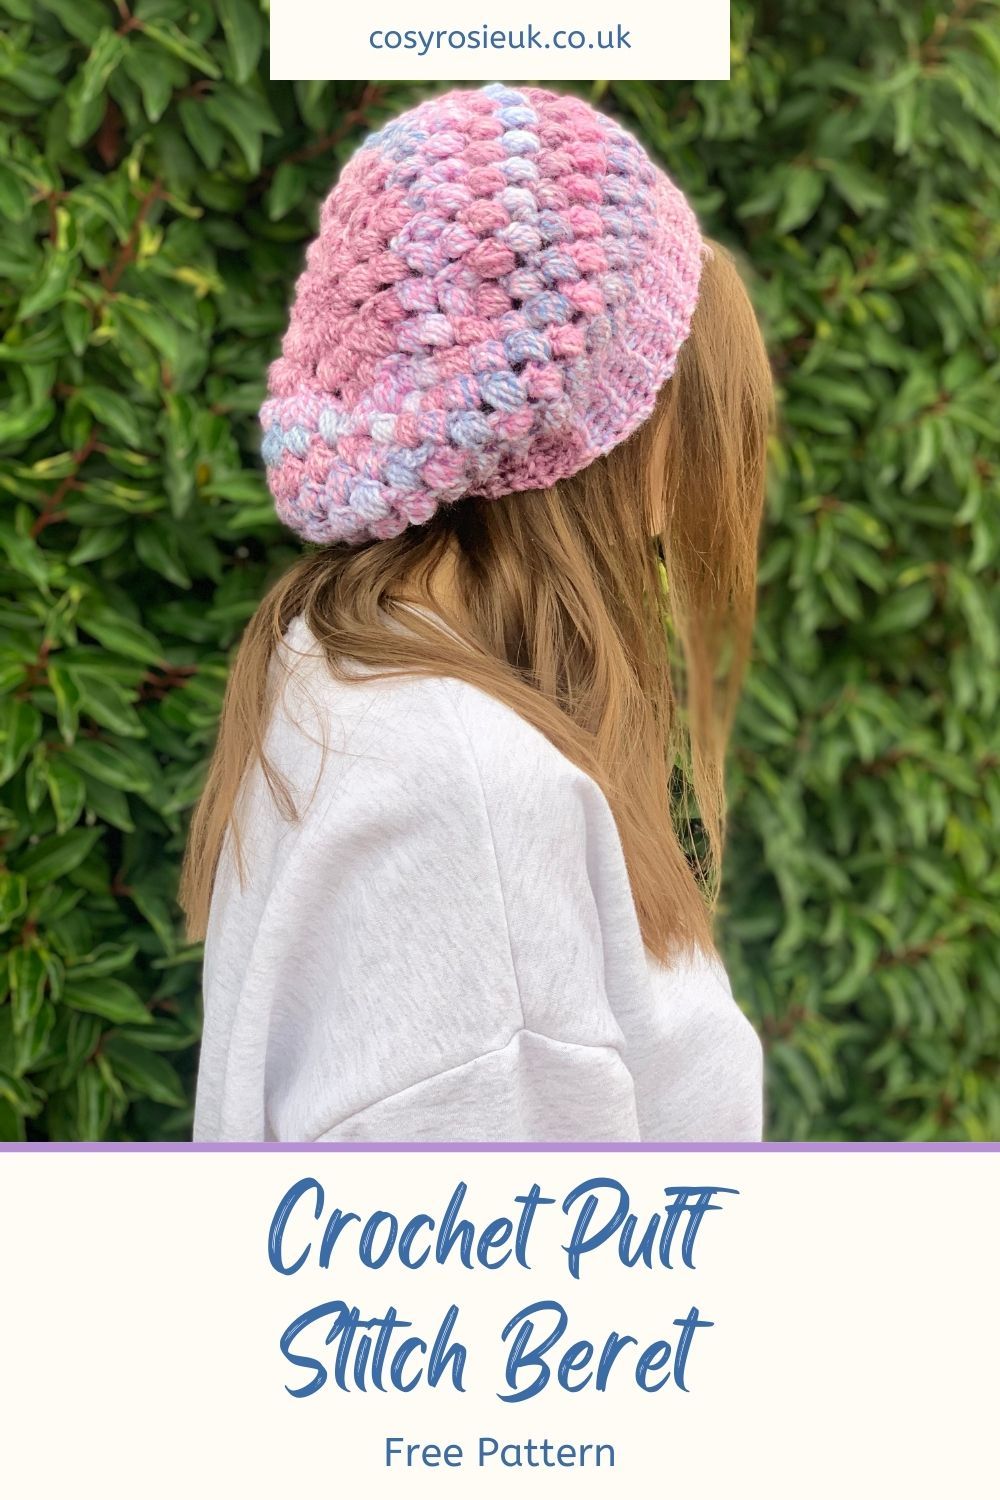 Free Crochet Beret Pattern with Puff Stitch